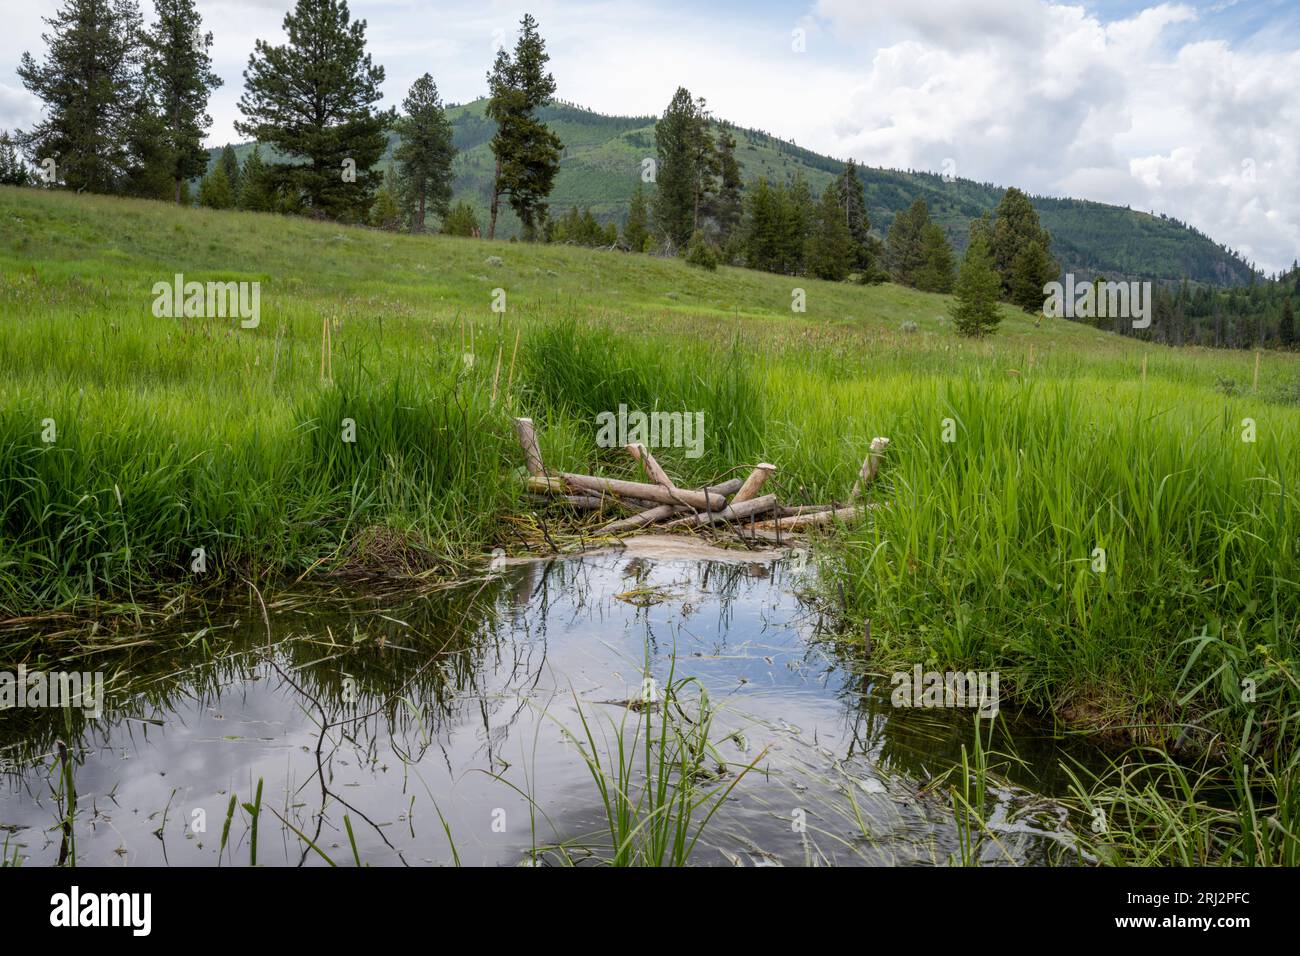 11/6/22.Wild Horse Creek, Montana. Analoghi della diga di Beaver (BDA) e piantine di salice utilizzate per rallentare il flusso d'acqua del torrente raddrizzato per l'irrigazione 100 anni. Foto Stock